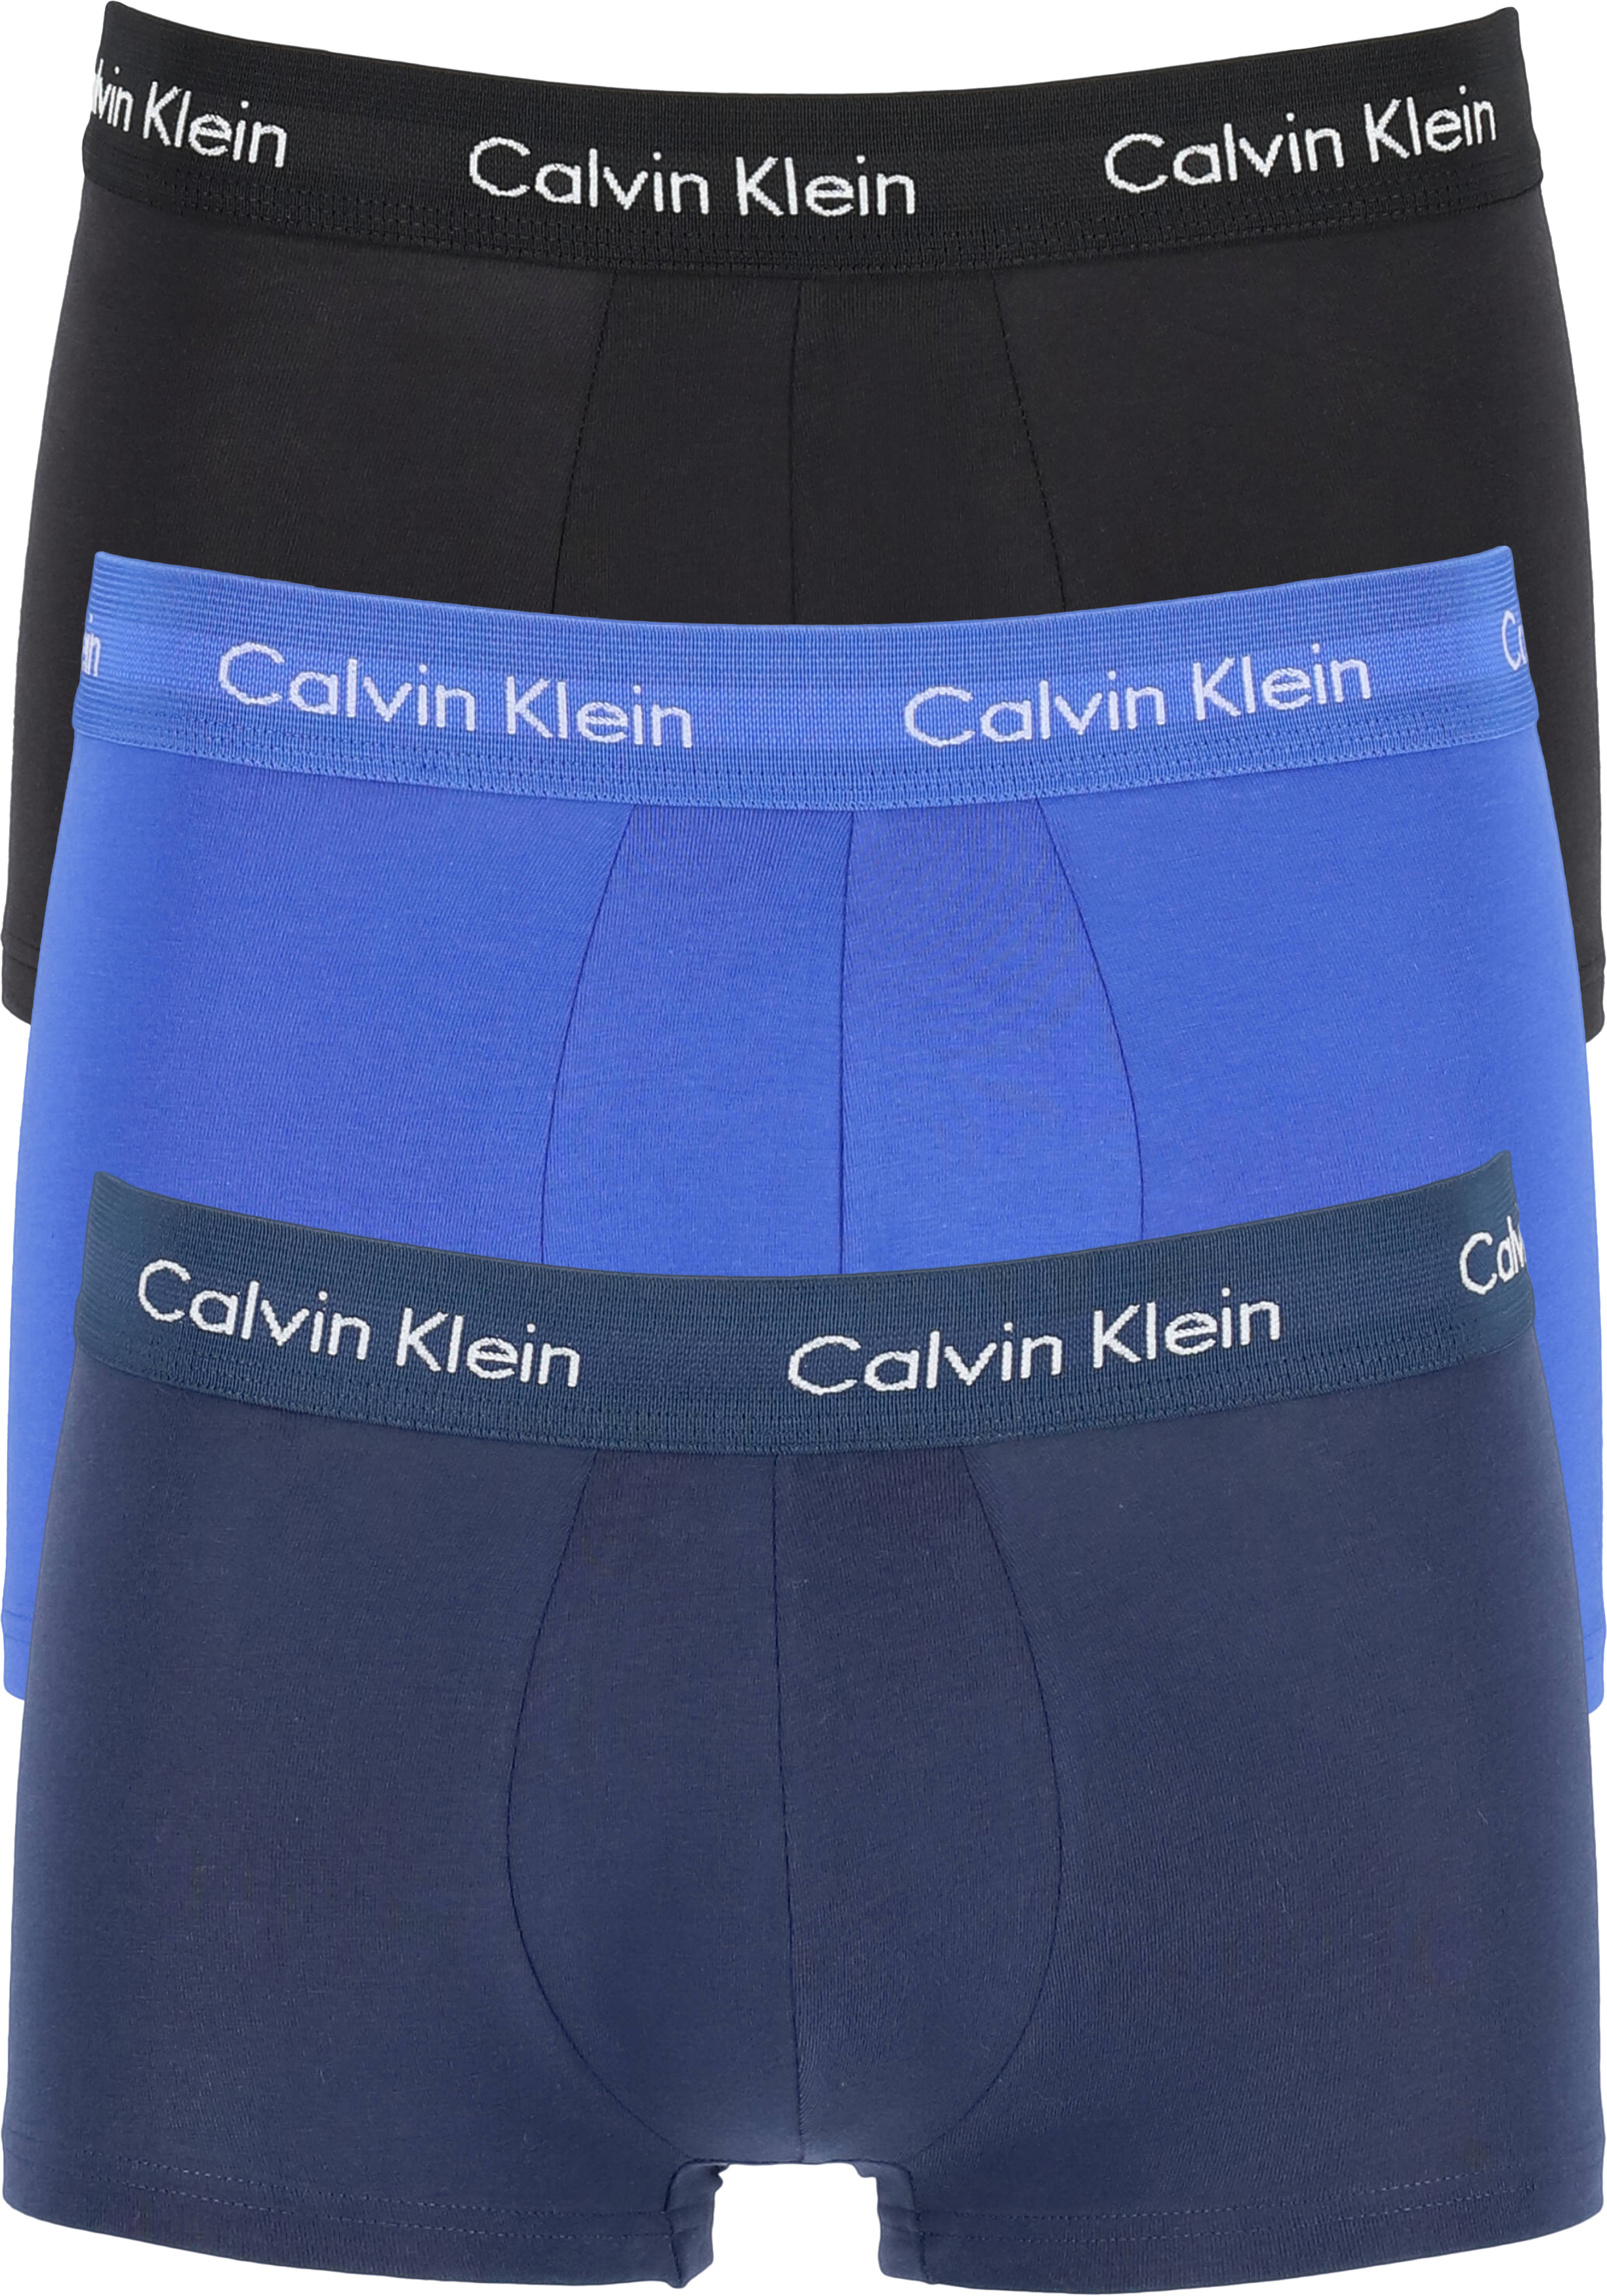 Uitvoerder Bungalow Koningin Calvin Klein low rise trunks (3-pack), lage heren boxers kort, kobalt,... -  SALE tot 70% korting